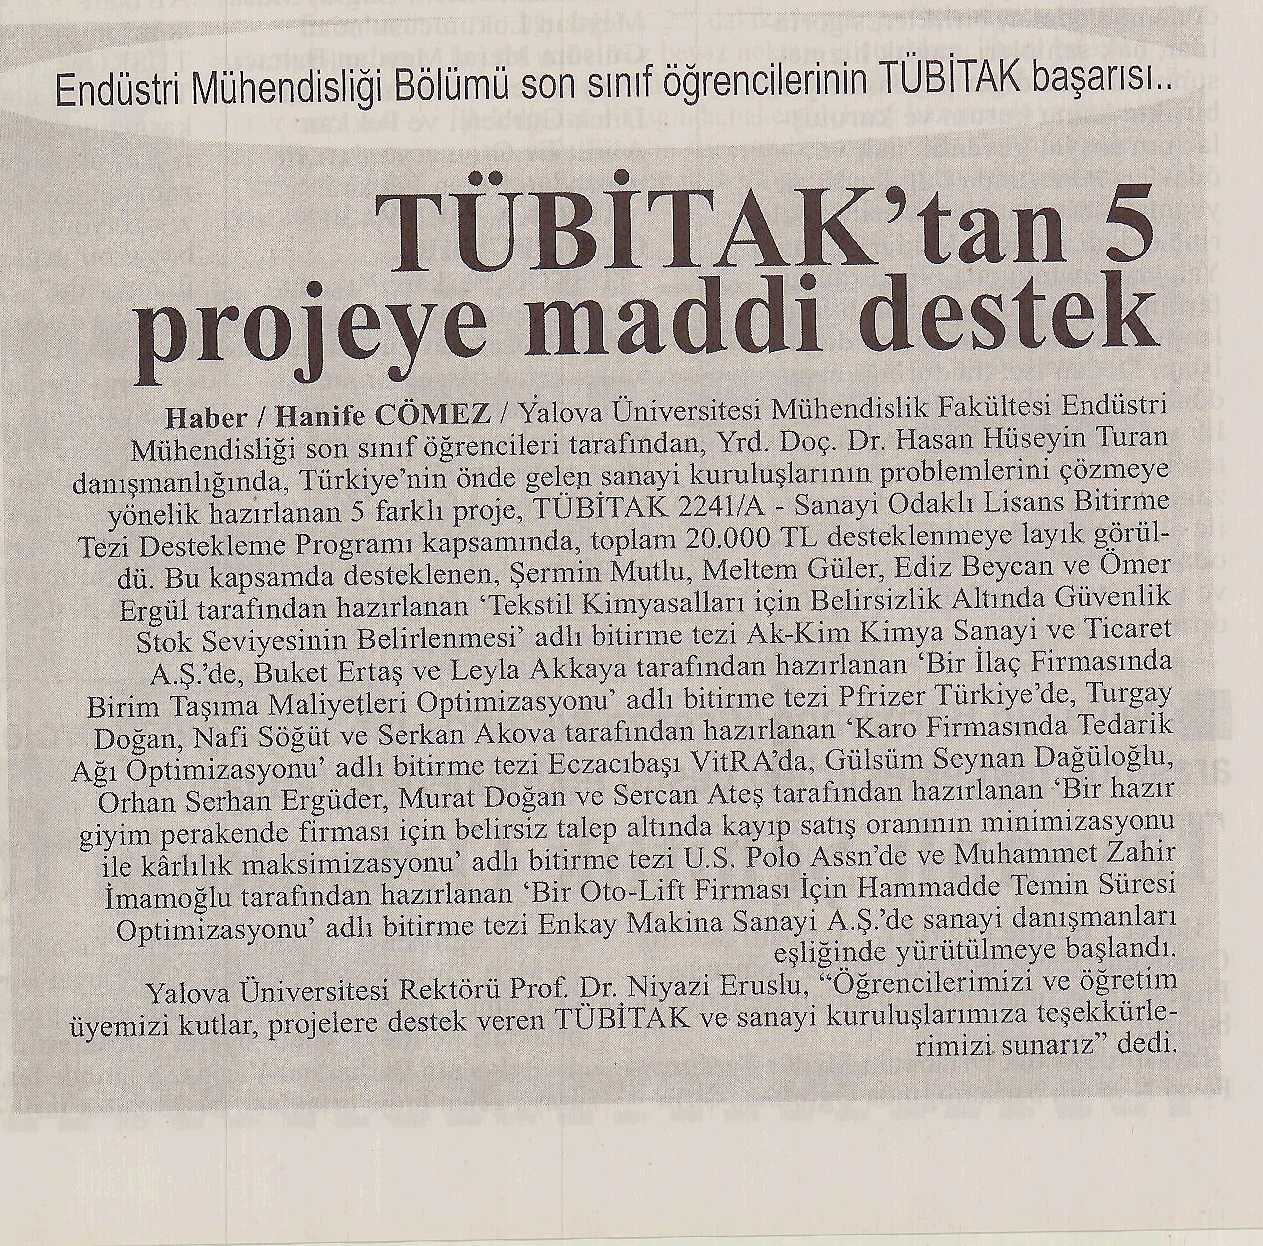 Tübitak’tan 5 Projeye maddi destek / Haberci / 5 Mart 2014